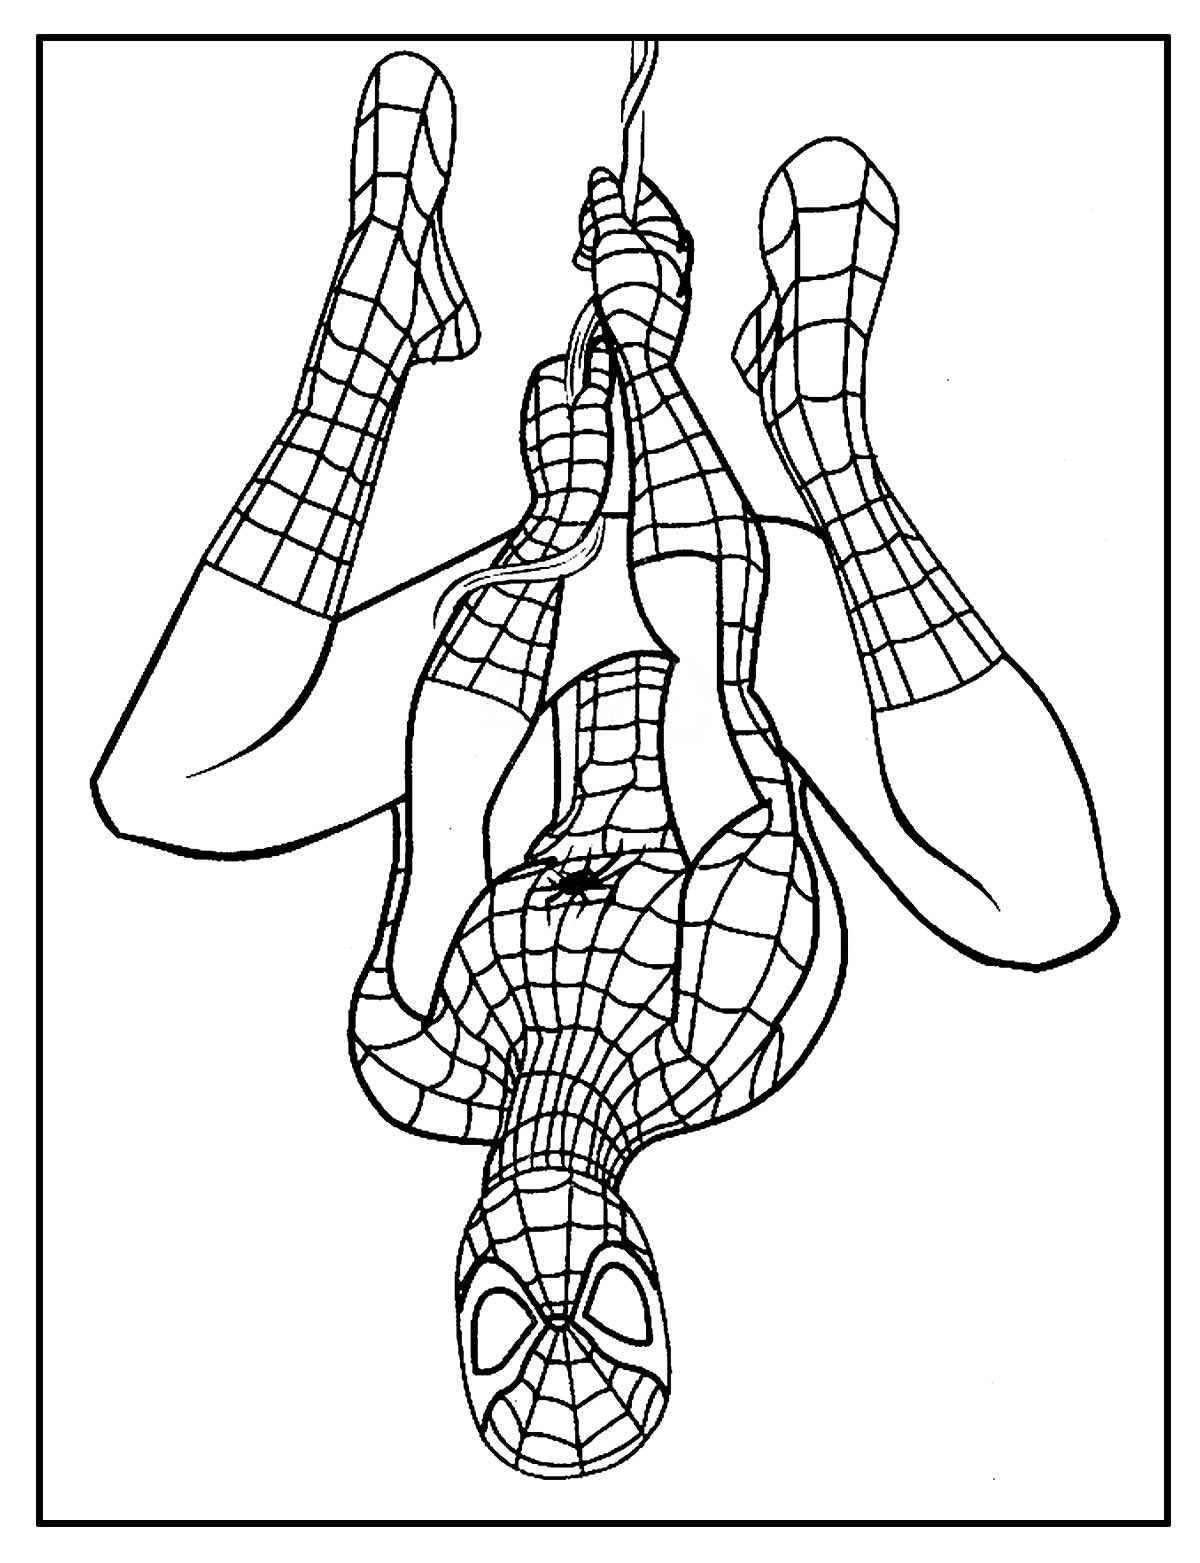 Página para colorir do Homem-Aranha